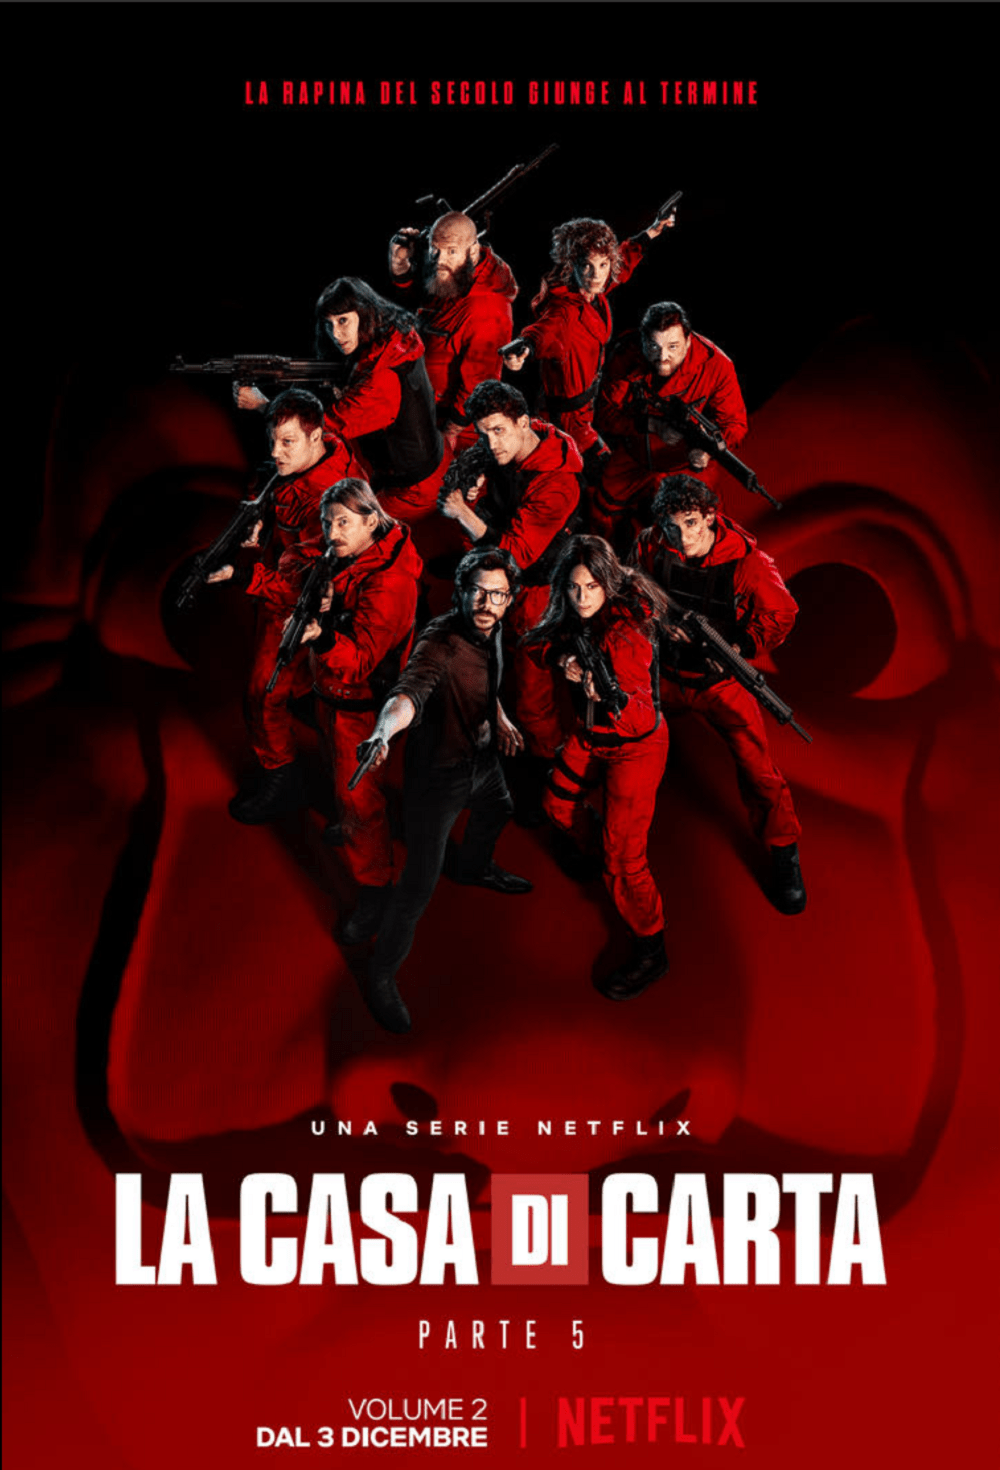 La Casa di Carta 5 volume 2: Netflix unveils the new poster